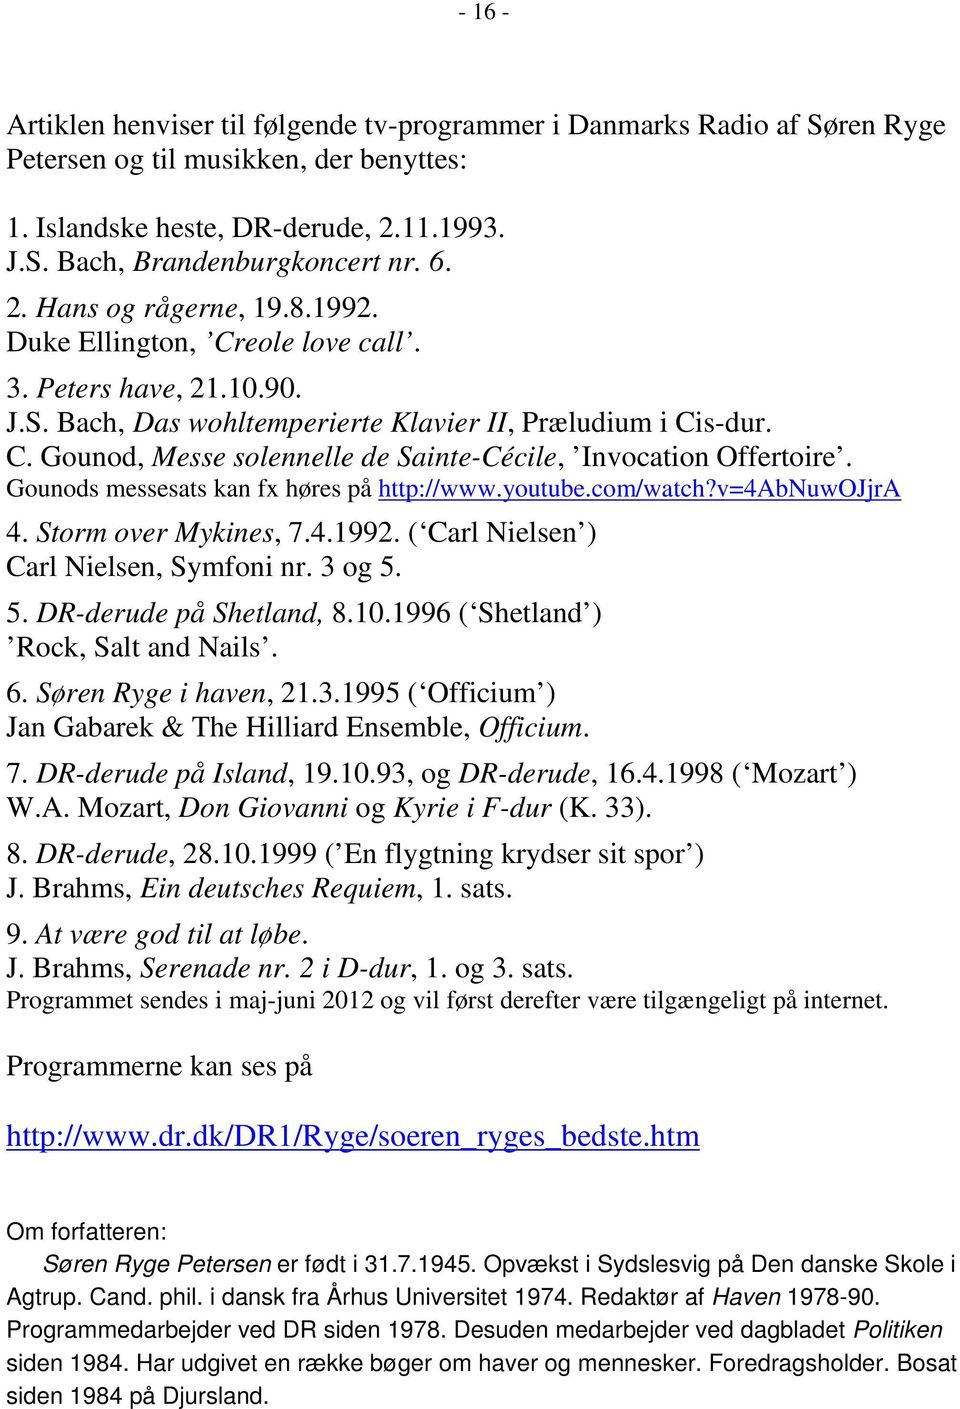 Gounods messesats kan fx høres på http://www.youtube.com/watch?v=4abnuwojjra 4. Storm over Mykines, 7.4.1992. ( Carl Nielsen ) Carl Nielsen, Symfoni nr. 3 og 5. 5. DR-derude på Shetland, 8.10.